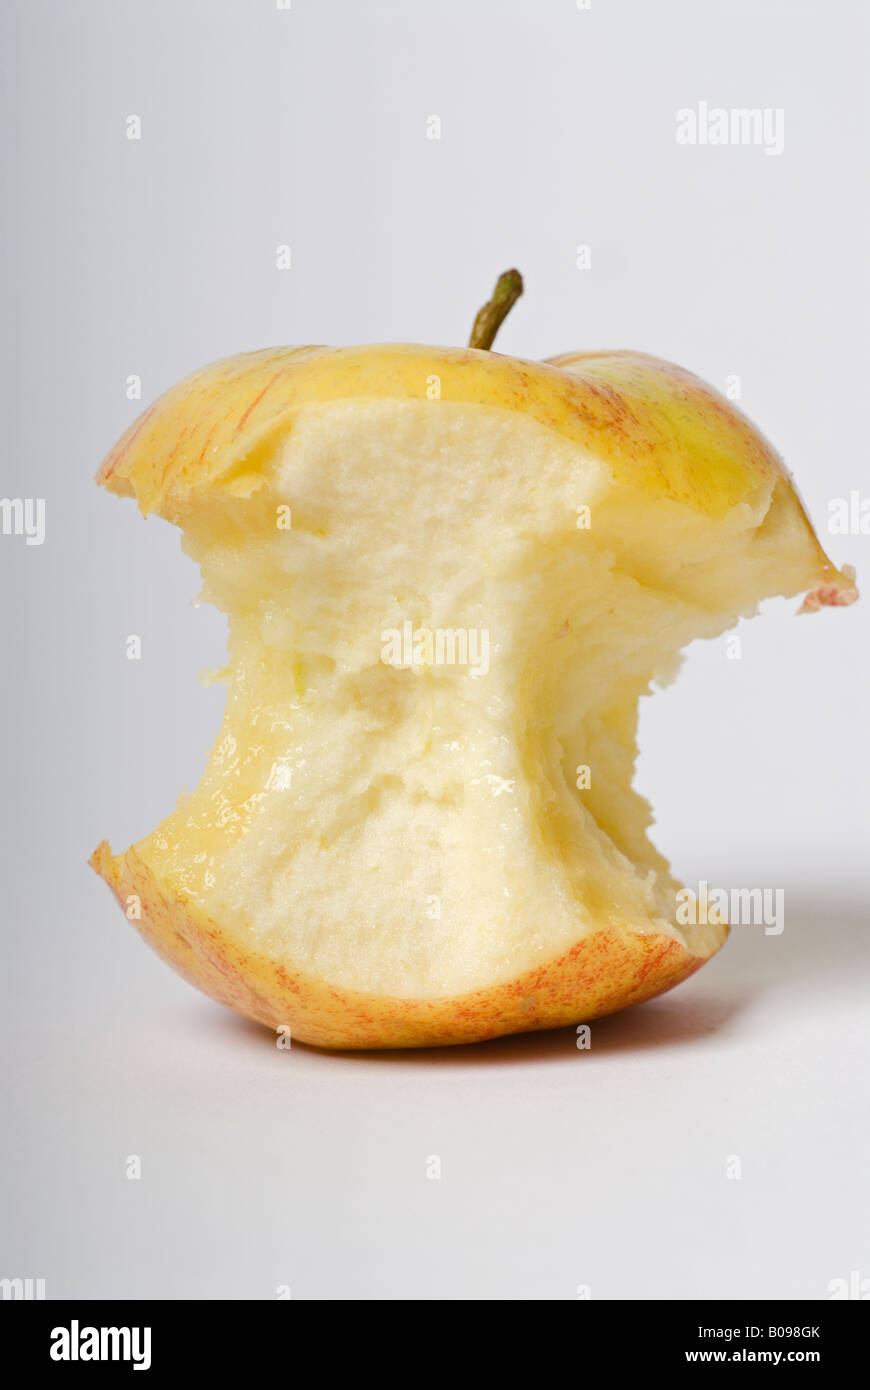 Stock Foto von einem frischen Apfel-Kern auf weißem Hintergrund Stockfoto